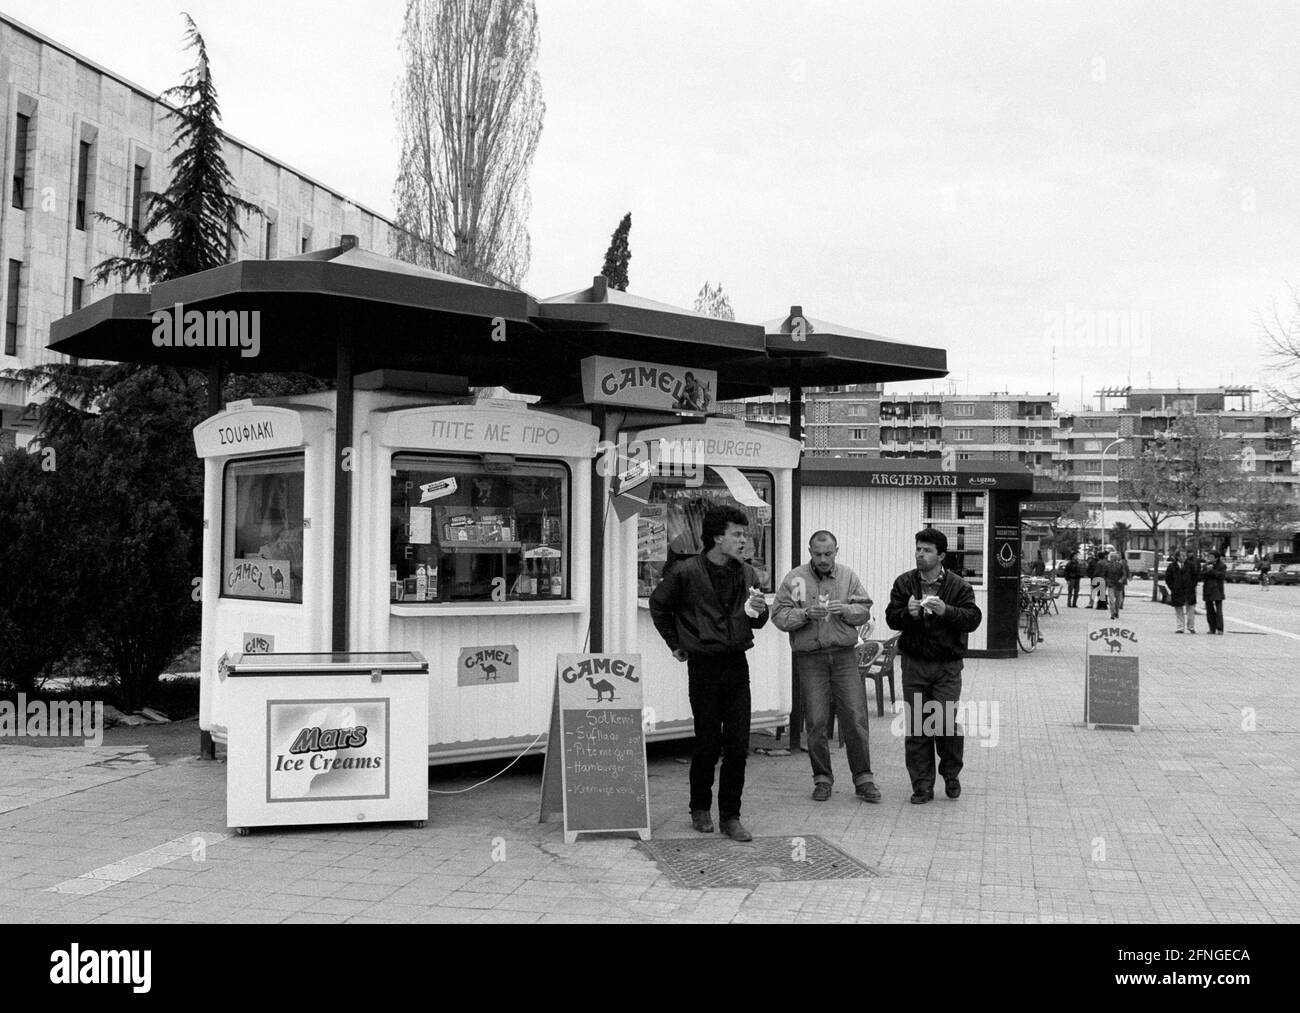 ALB, Albanien: EIN Fast-Food-/Snack-Bar-/Chipshop-/Food-Stall in Tirana, April 1994 [automatisierte Übersetzung] Stockfoto